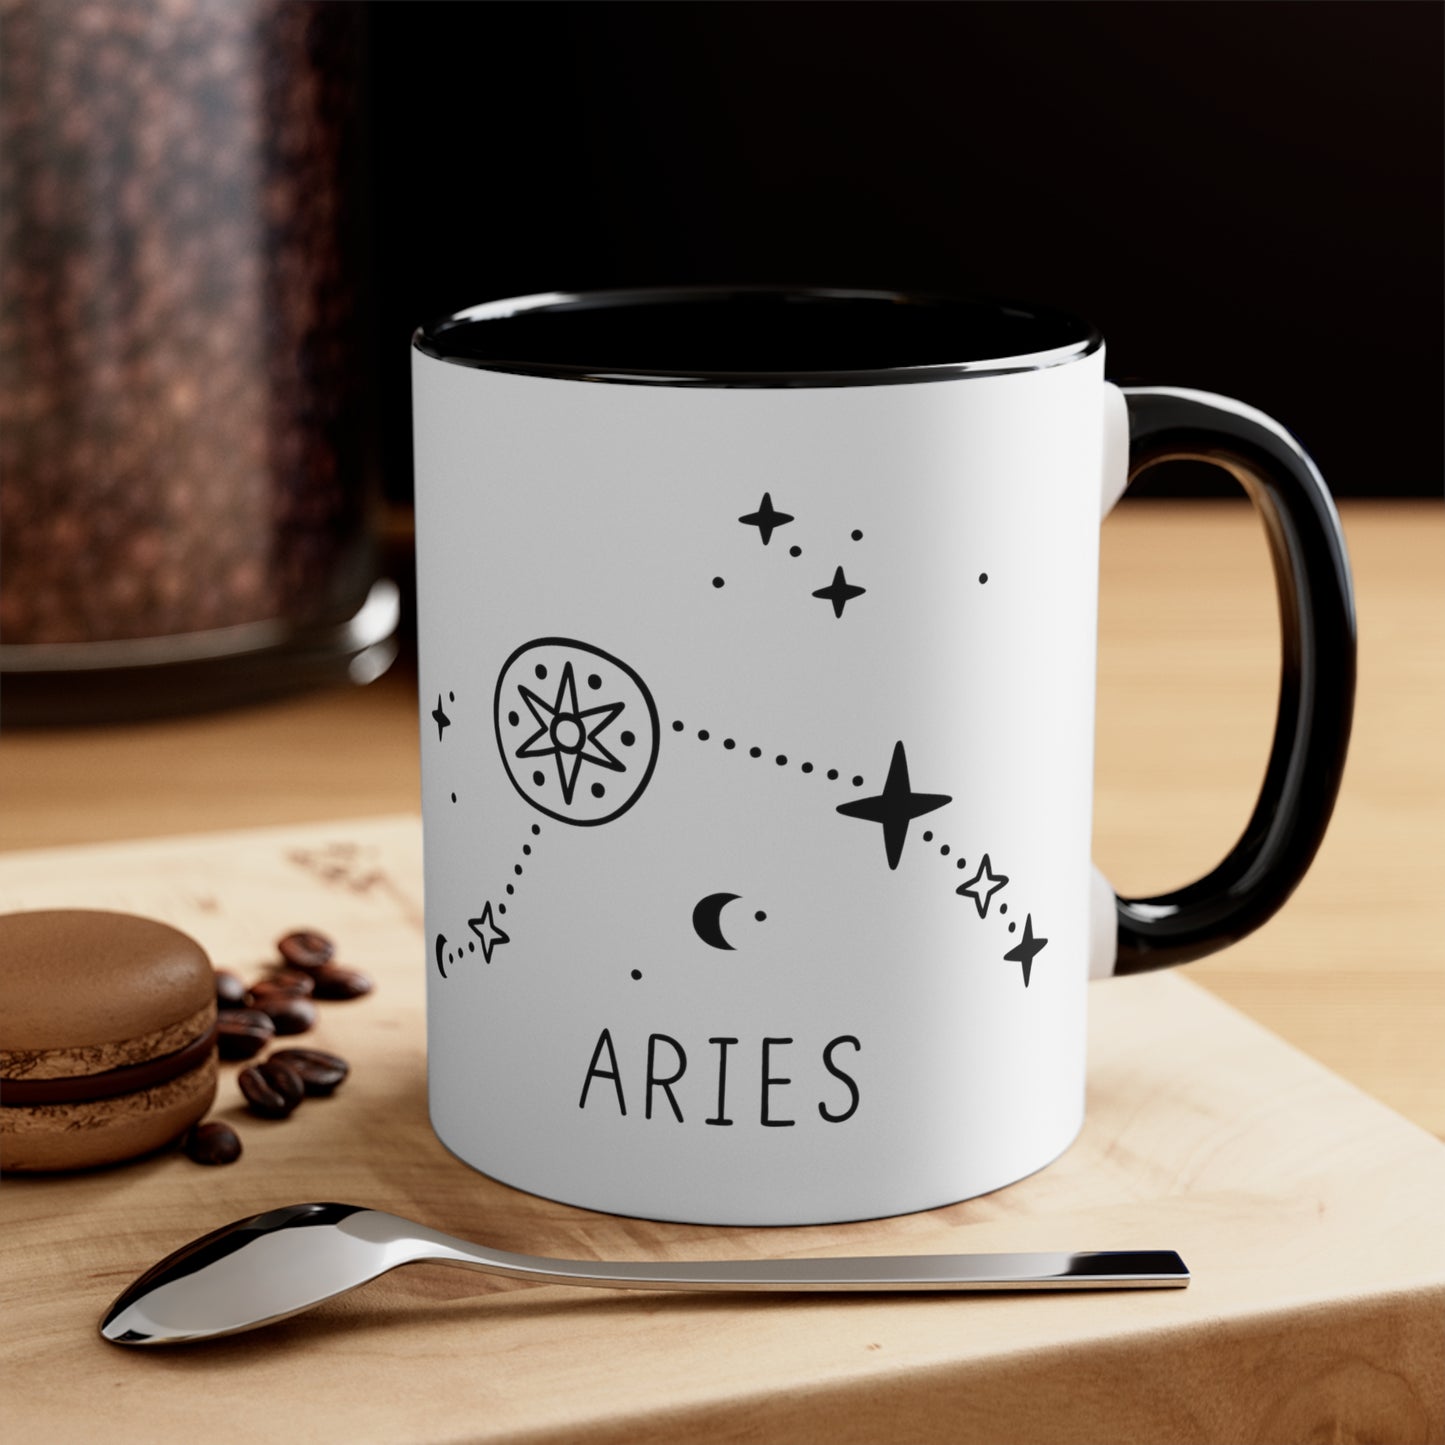 Aries constellation coffee mug